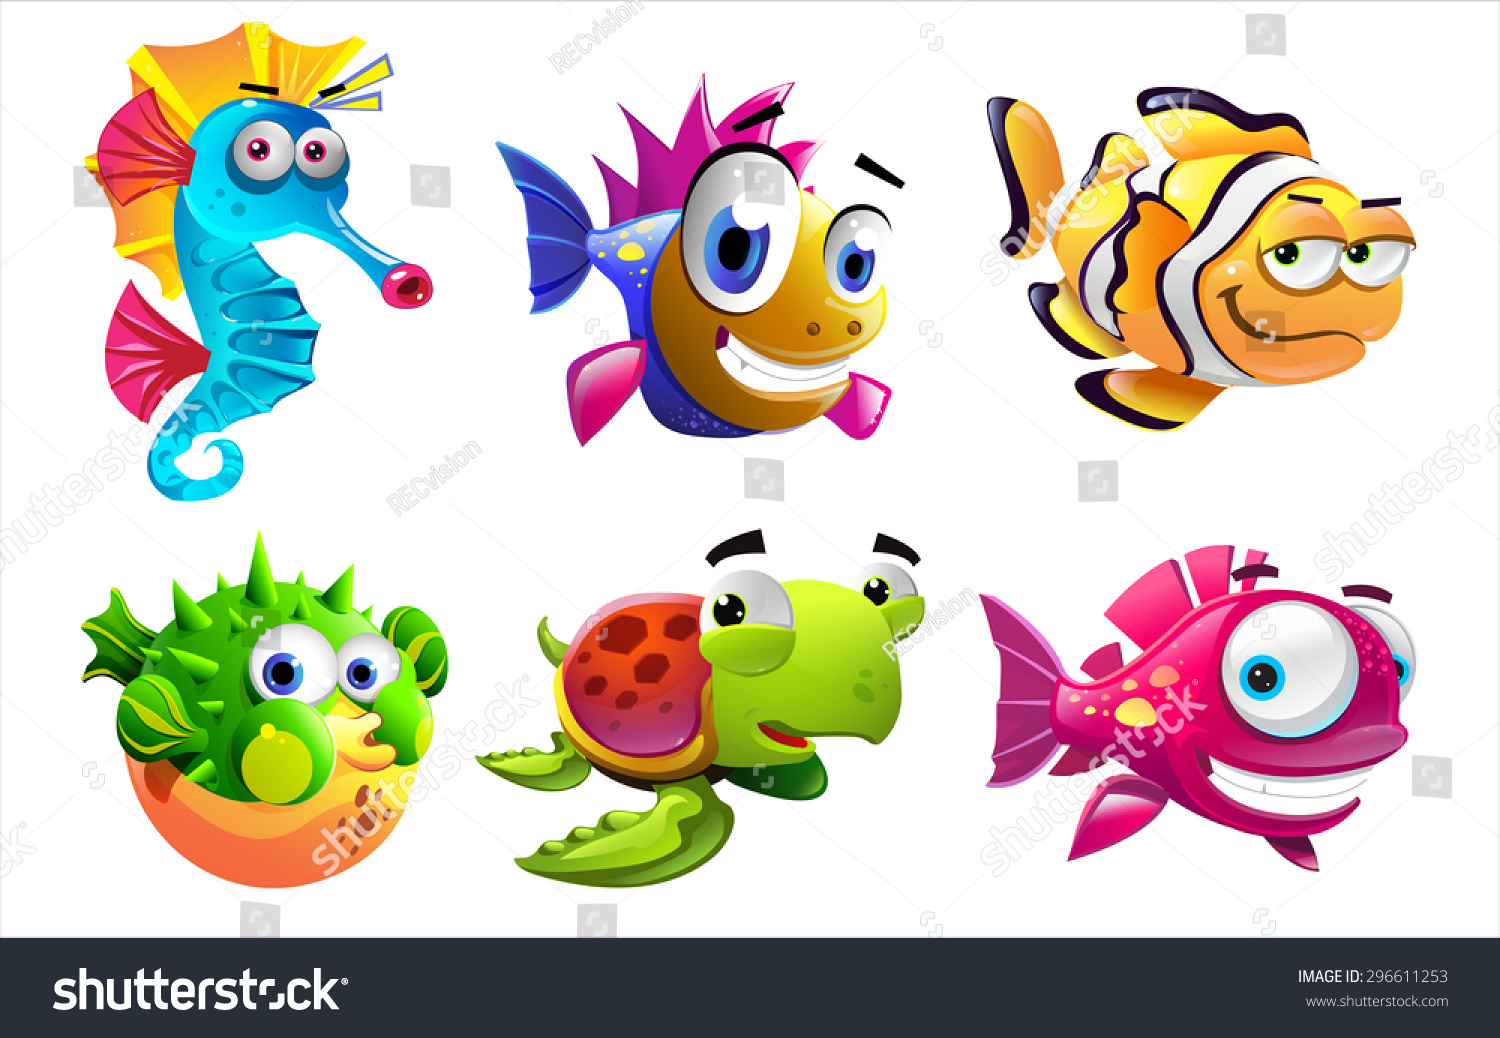 Illustration Cartoon Sea Creatures On White Stock Vector 296611253